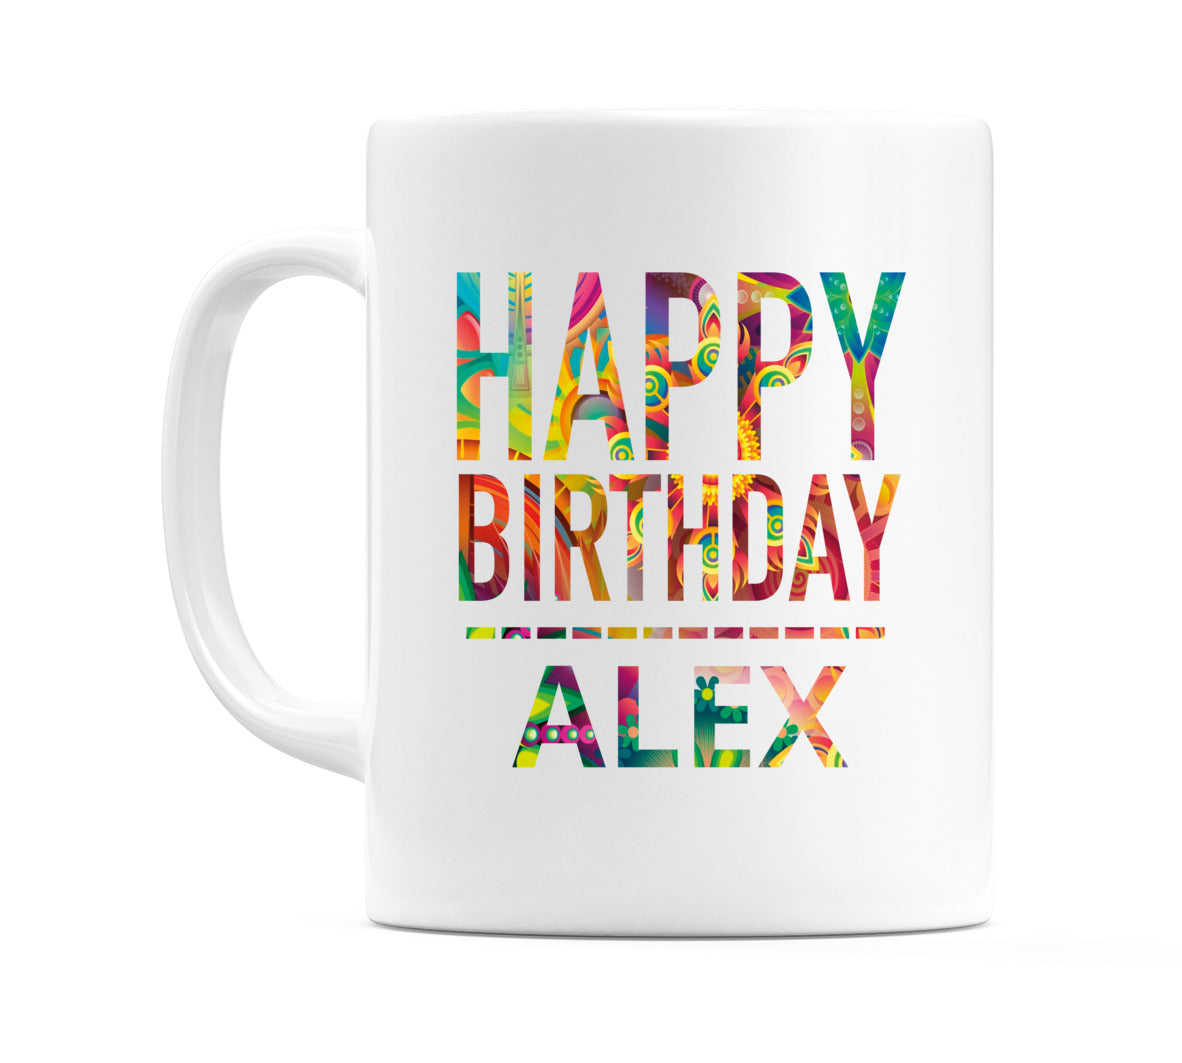 Happy Birthday Alex (Tie Dye Effect) Mug Cup by WeDoMugs